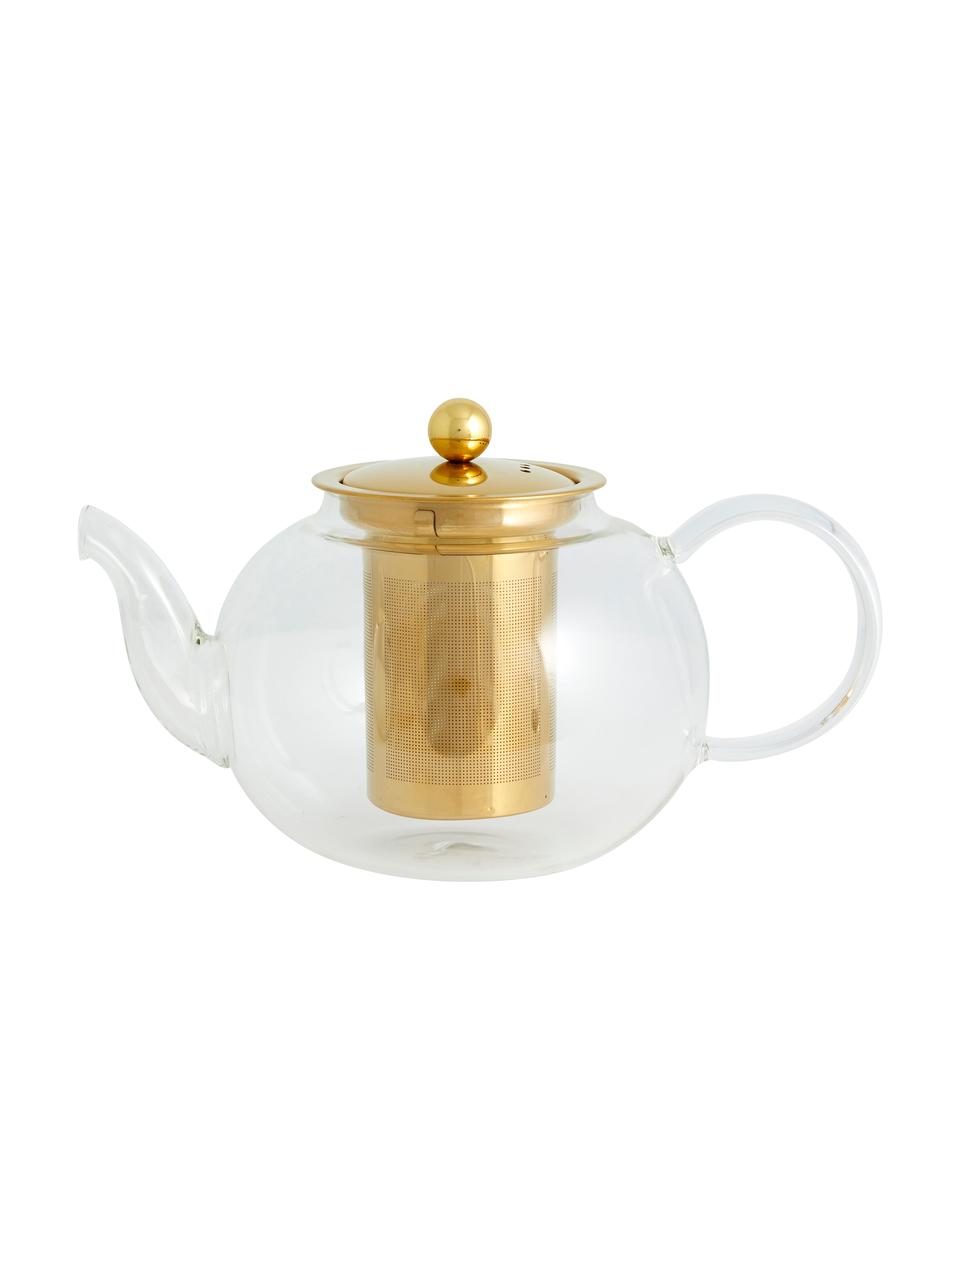 Théière en verre avec passoire à thé doré Chili, 1 l, Transparent, couleur dorée, 1 l